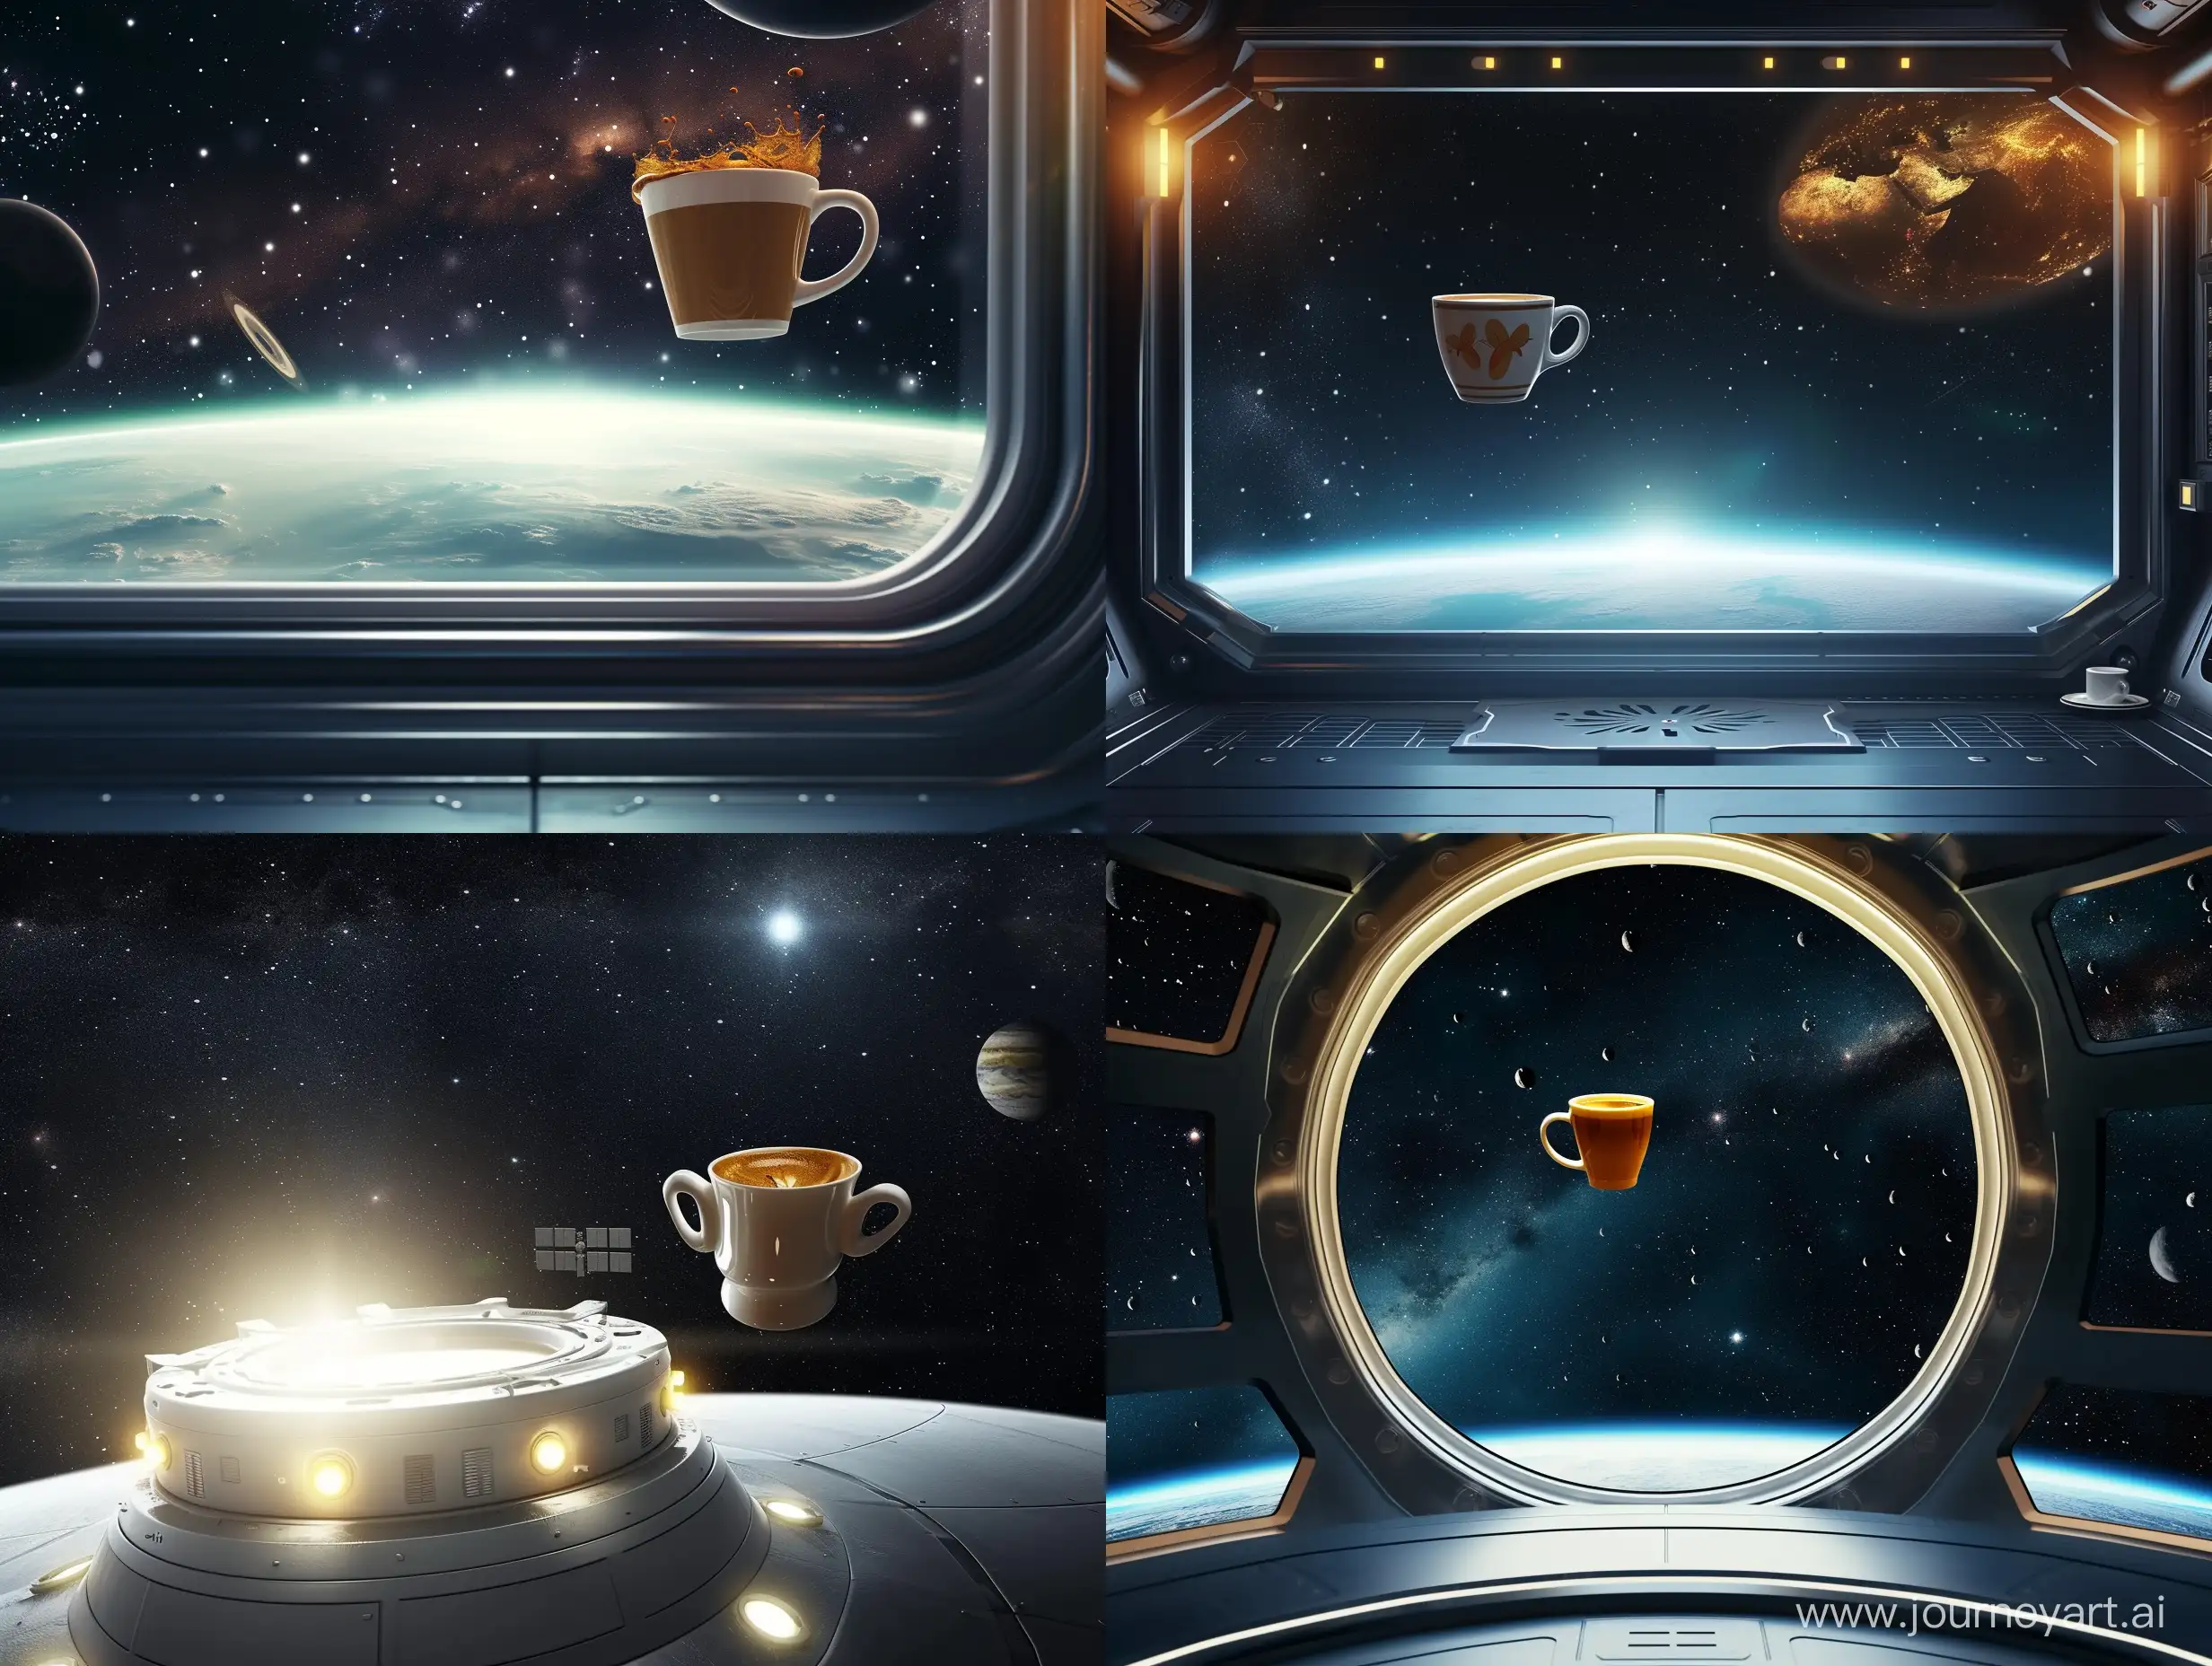 В невесомости, напротив элюминатора с видом на космос, летит кружка с кофе